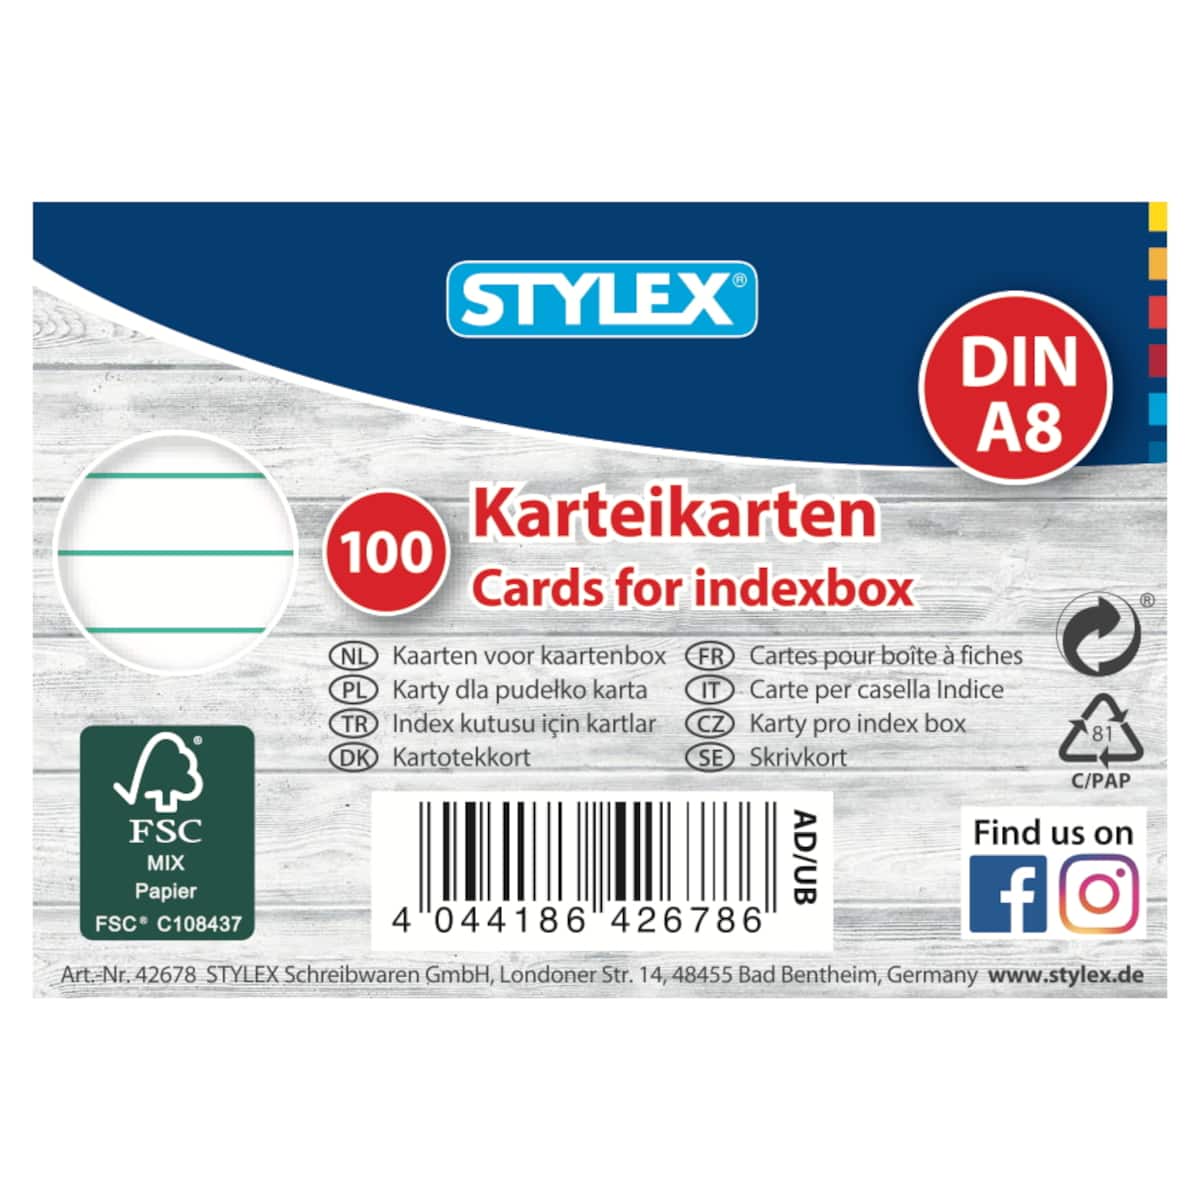 Stylex - 100 Karteikarten - DIN A8